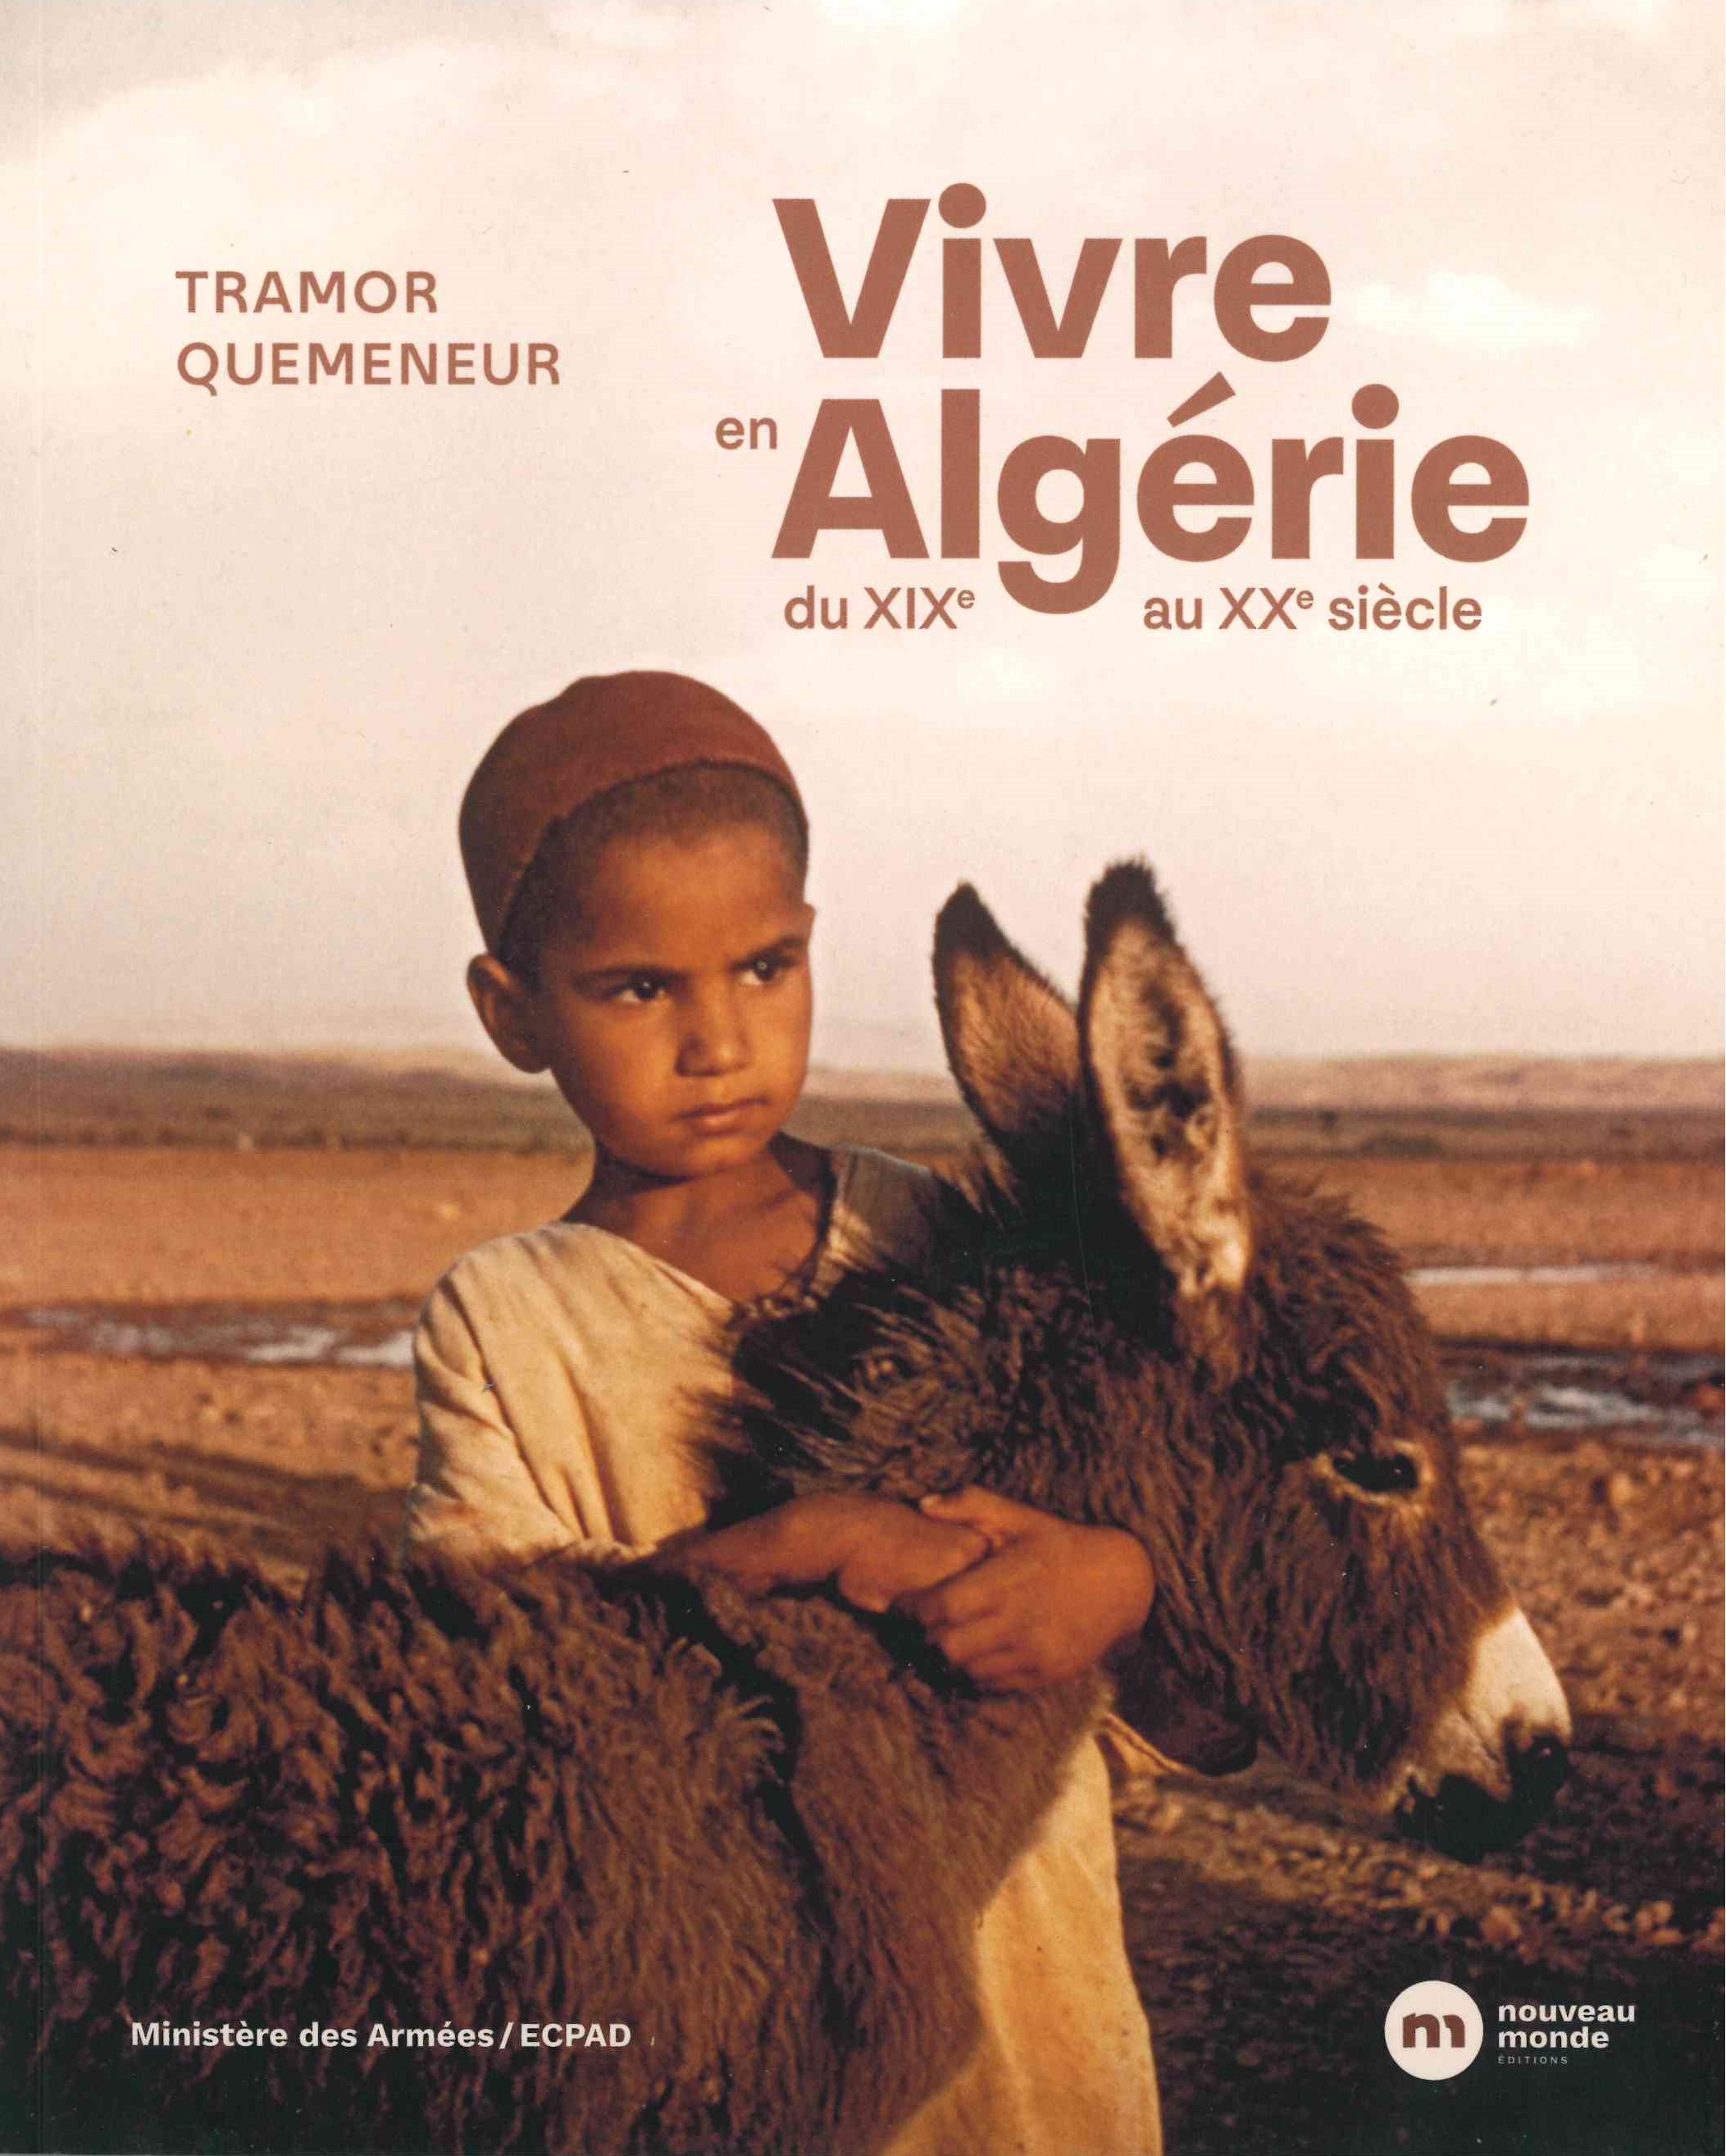 Quemeneur (Tramor), Vivre en Algérie : du XIXe au XXe siècle